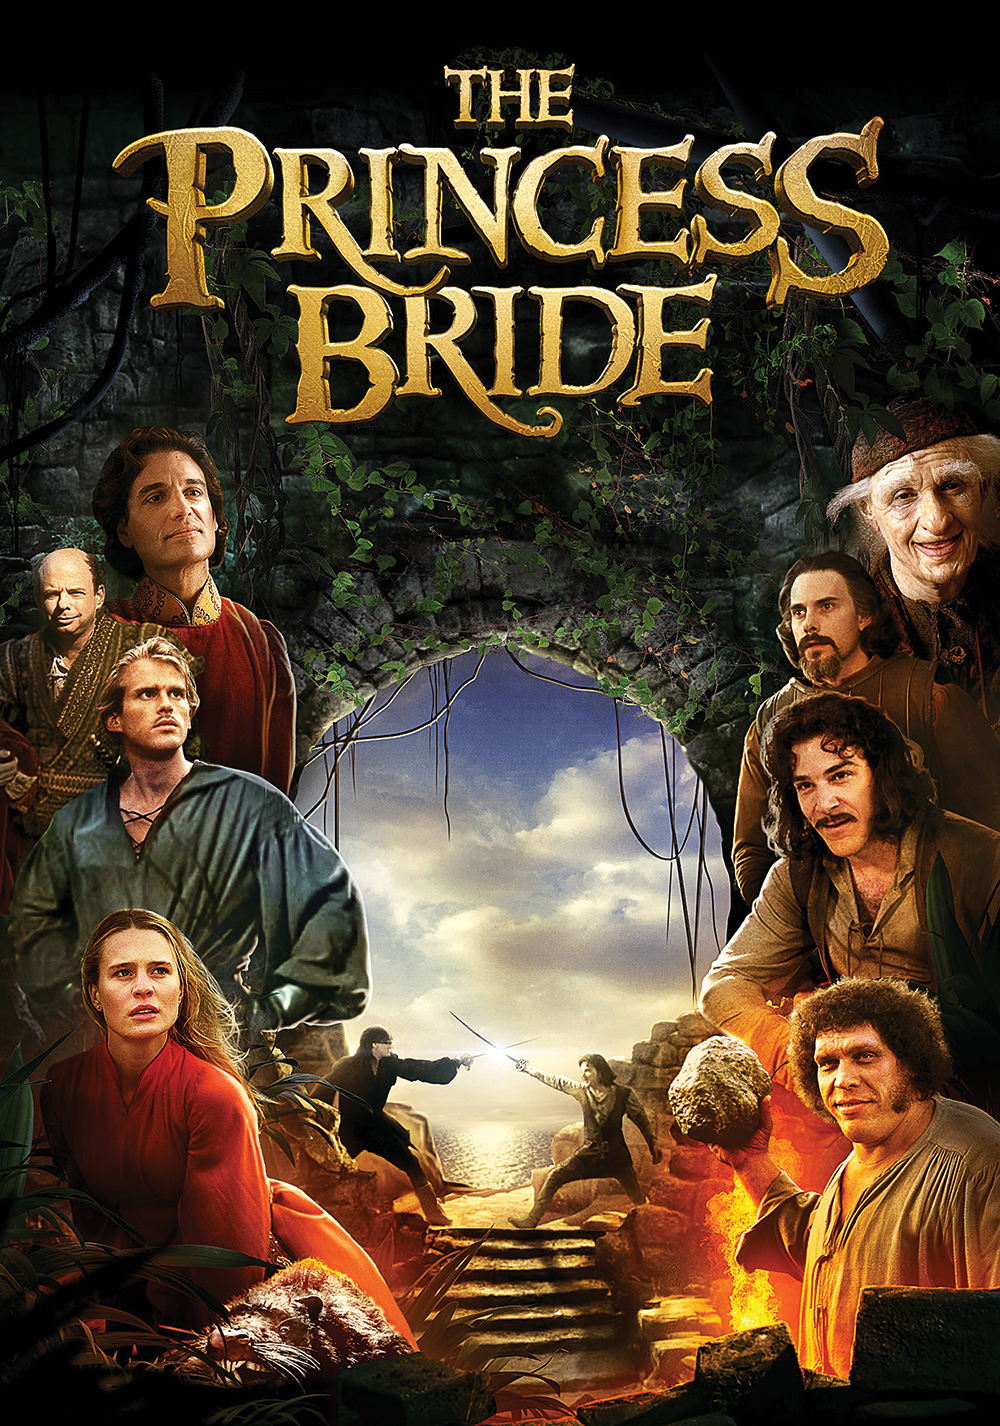 The Princess Bride (film) - Wikipedia